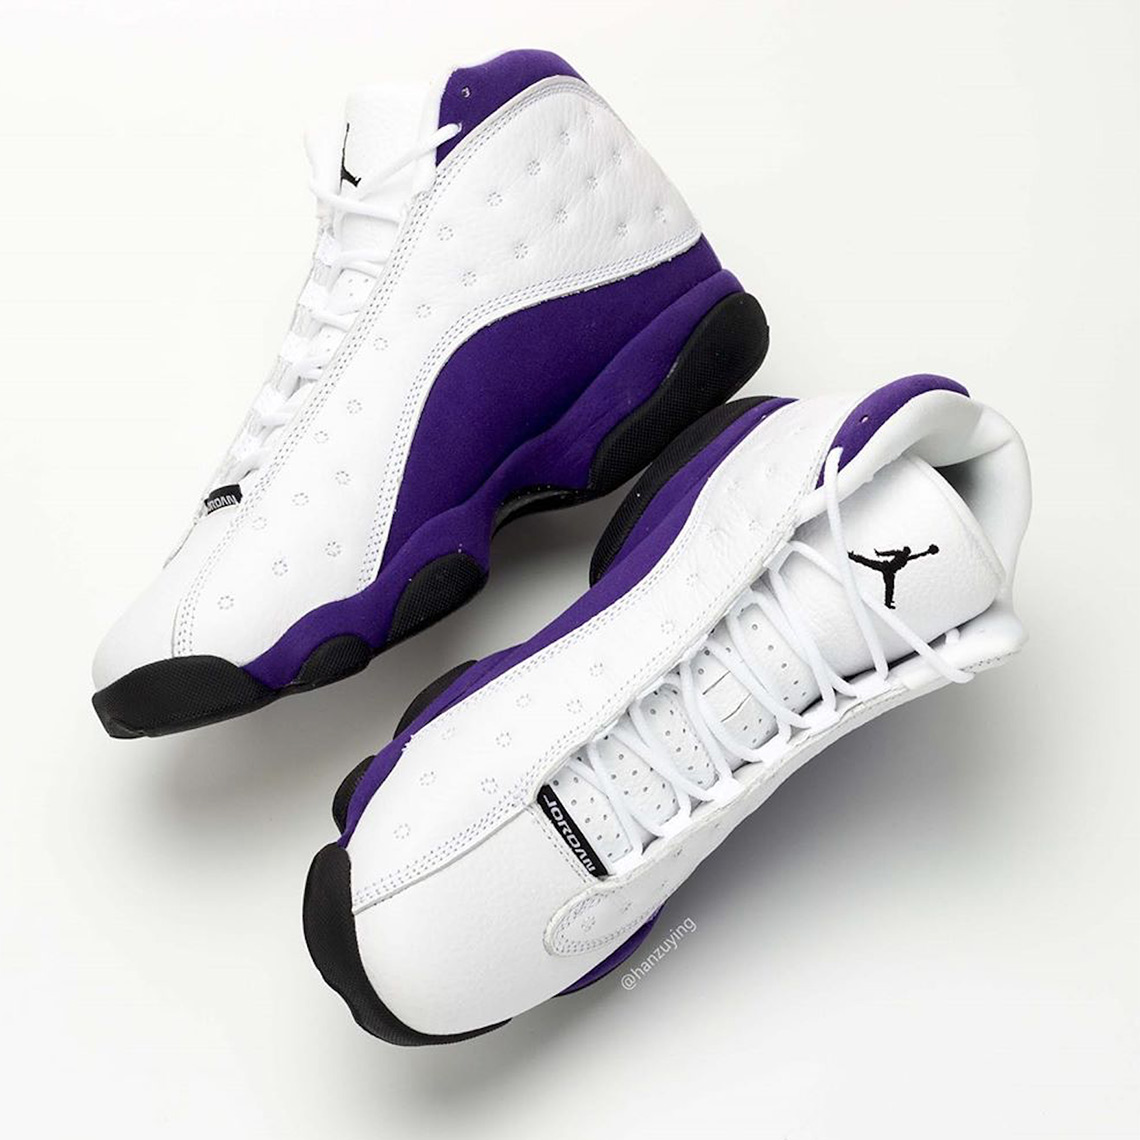 Air Jordan 13 Lakers 414571-105 Release Date | SneakerNews.com1140 x 1140